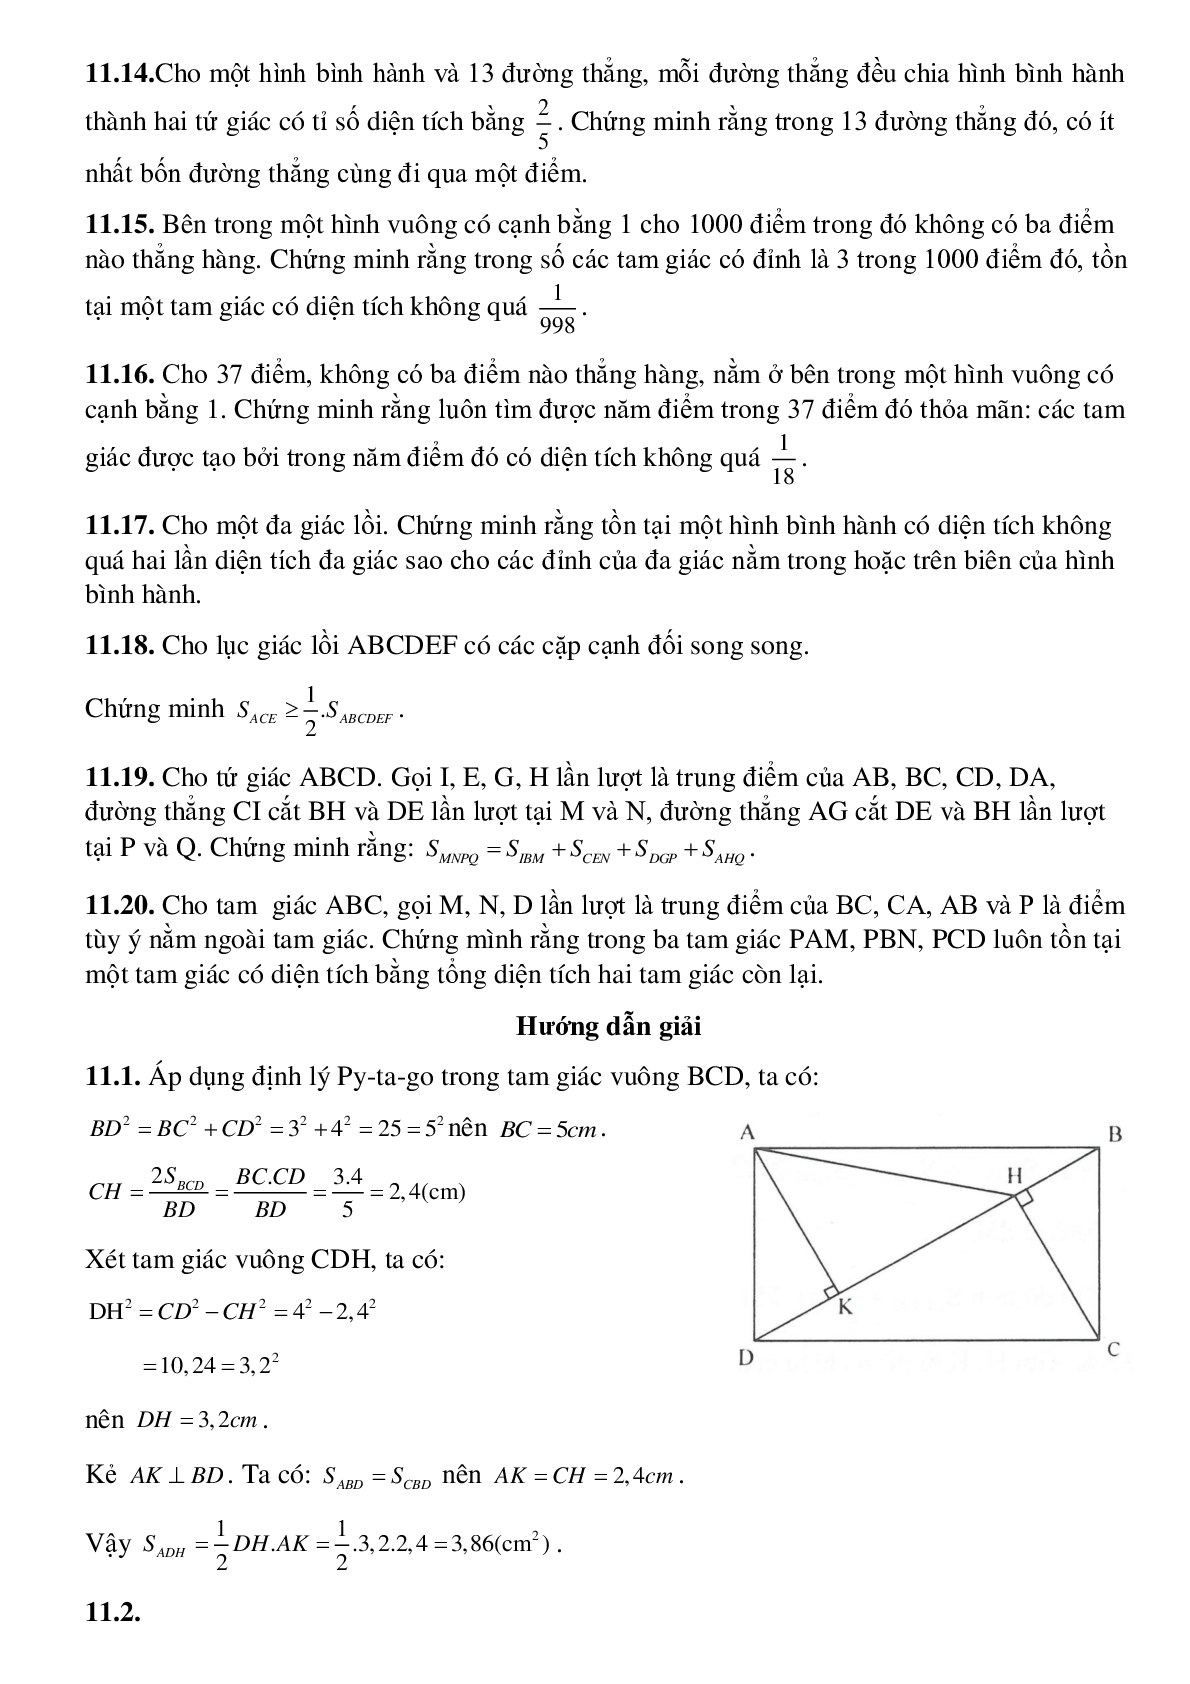 Diện tích đa giác (trang 9)